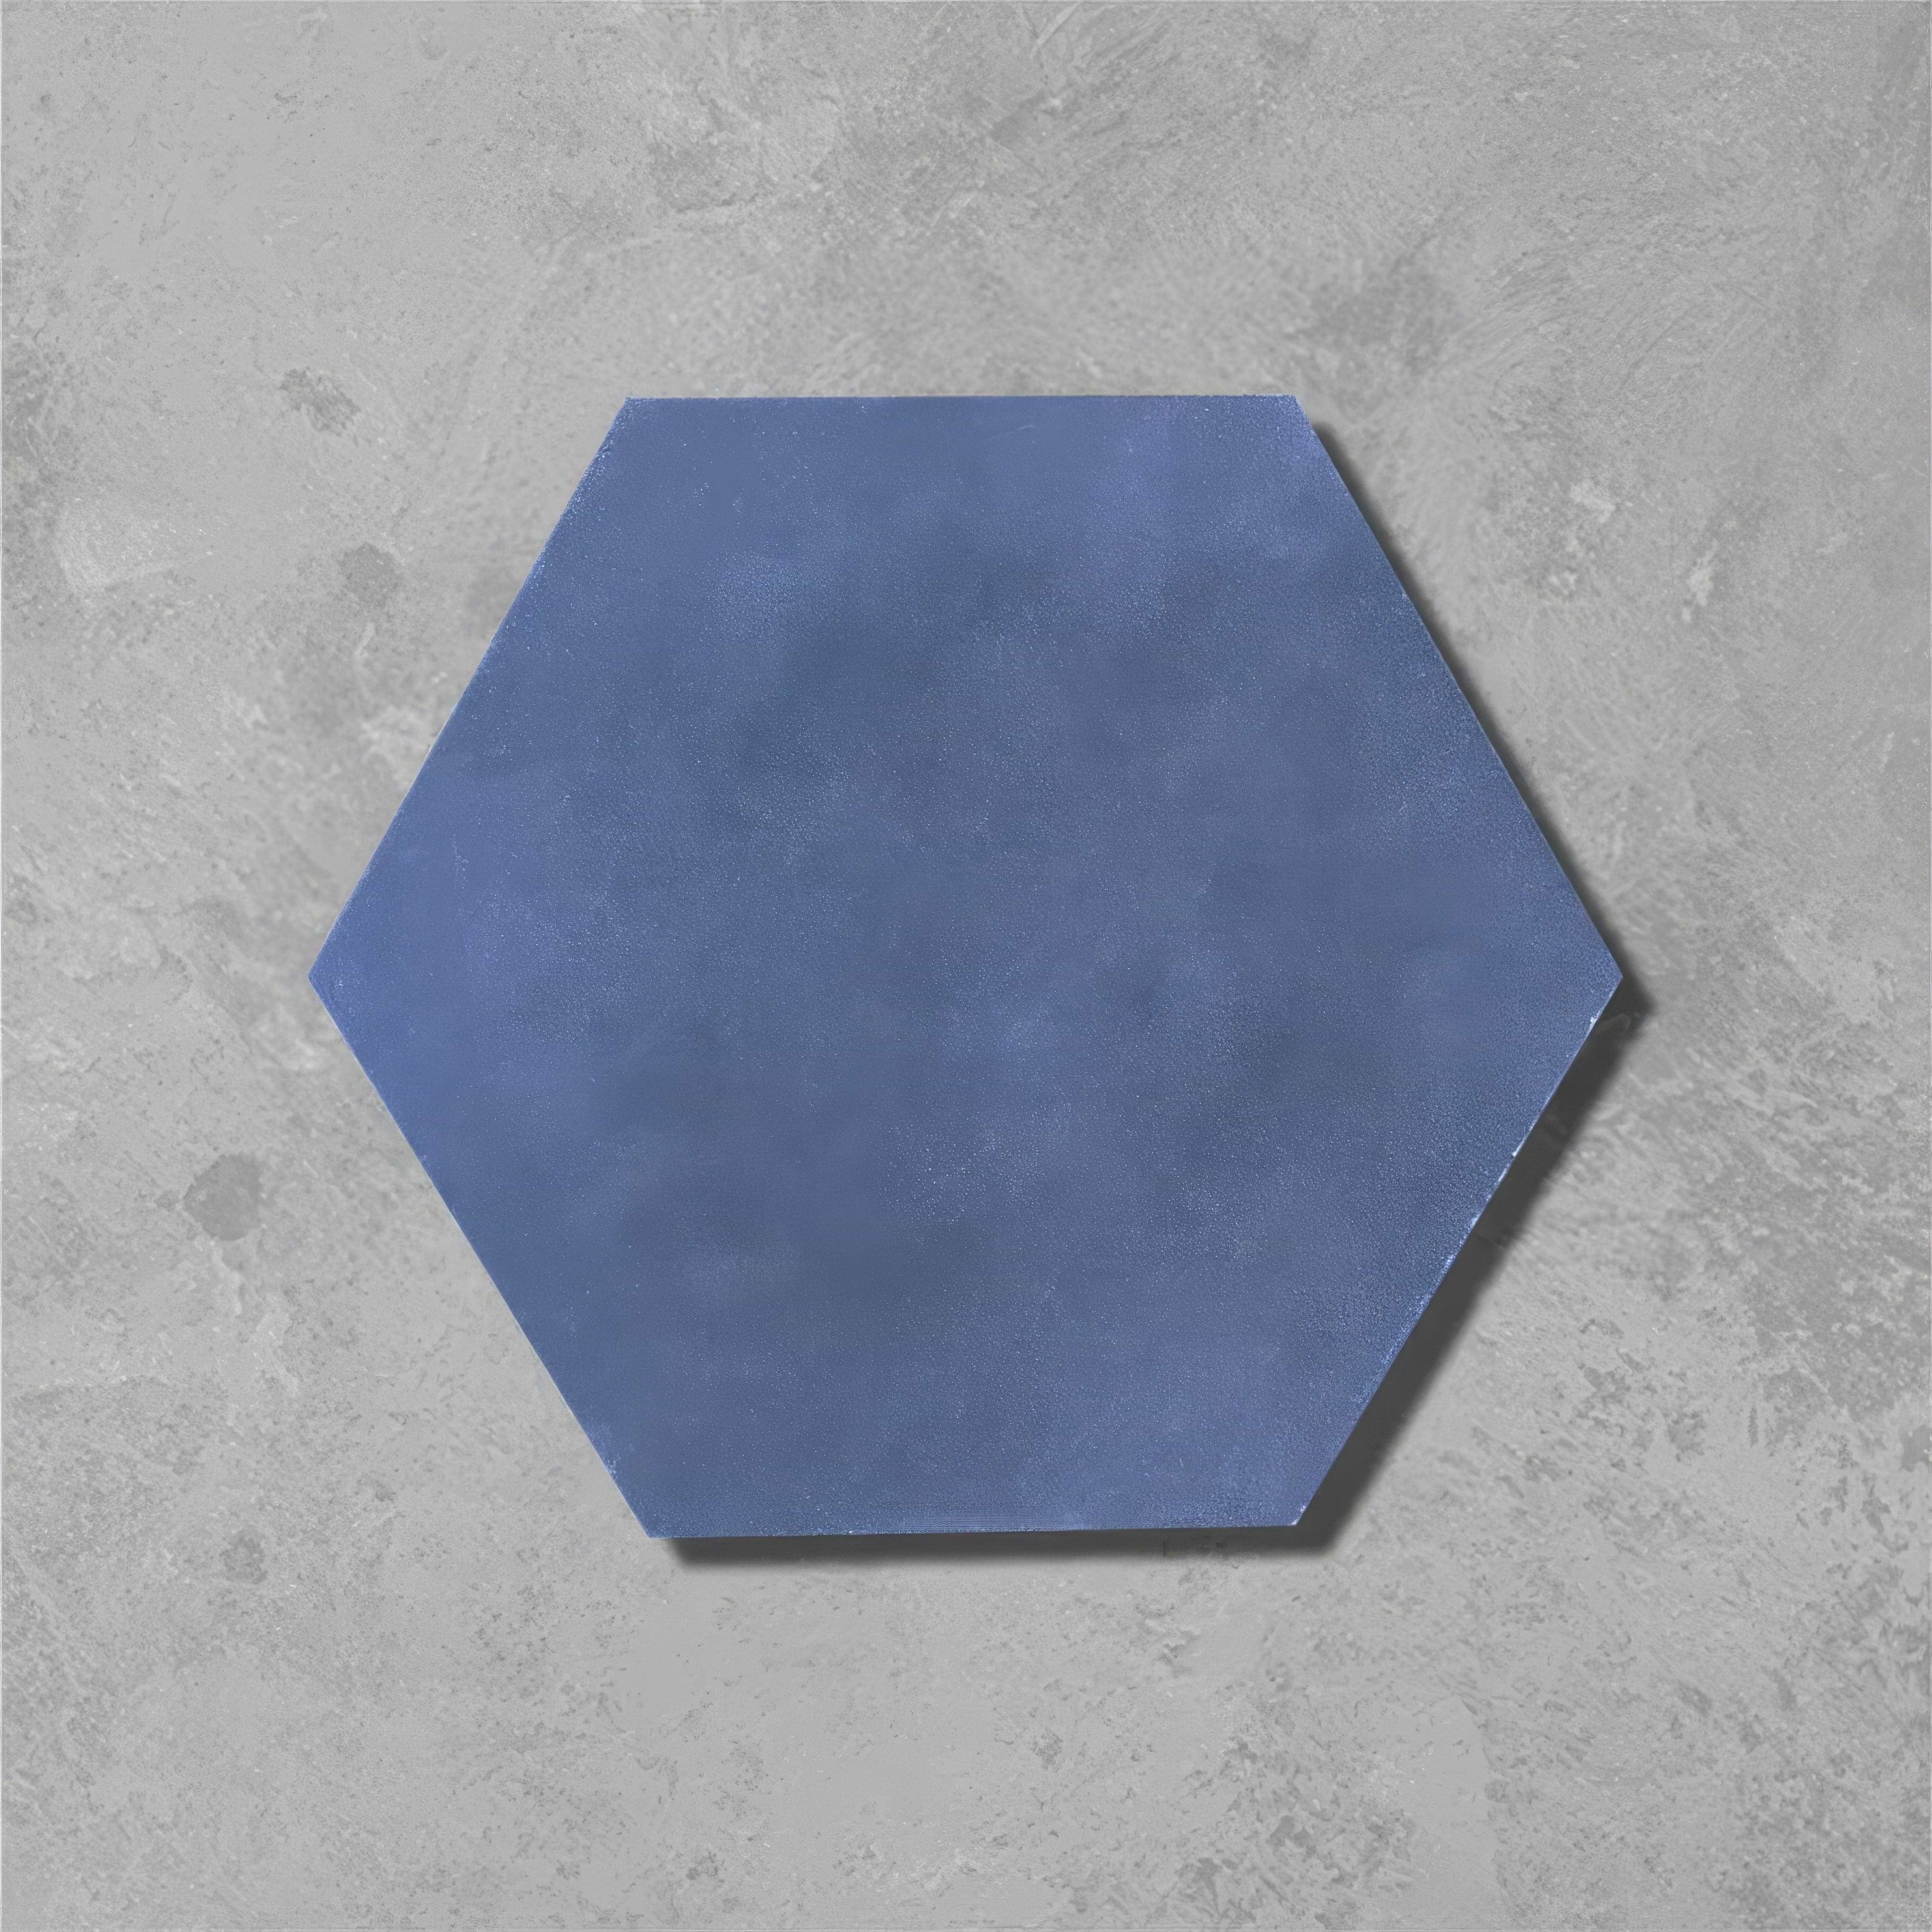 Navy Hexagonal Tile - Hyperion Tiles